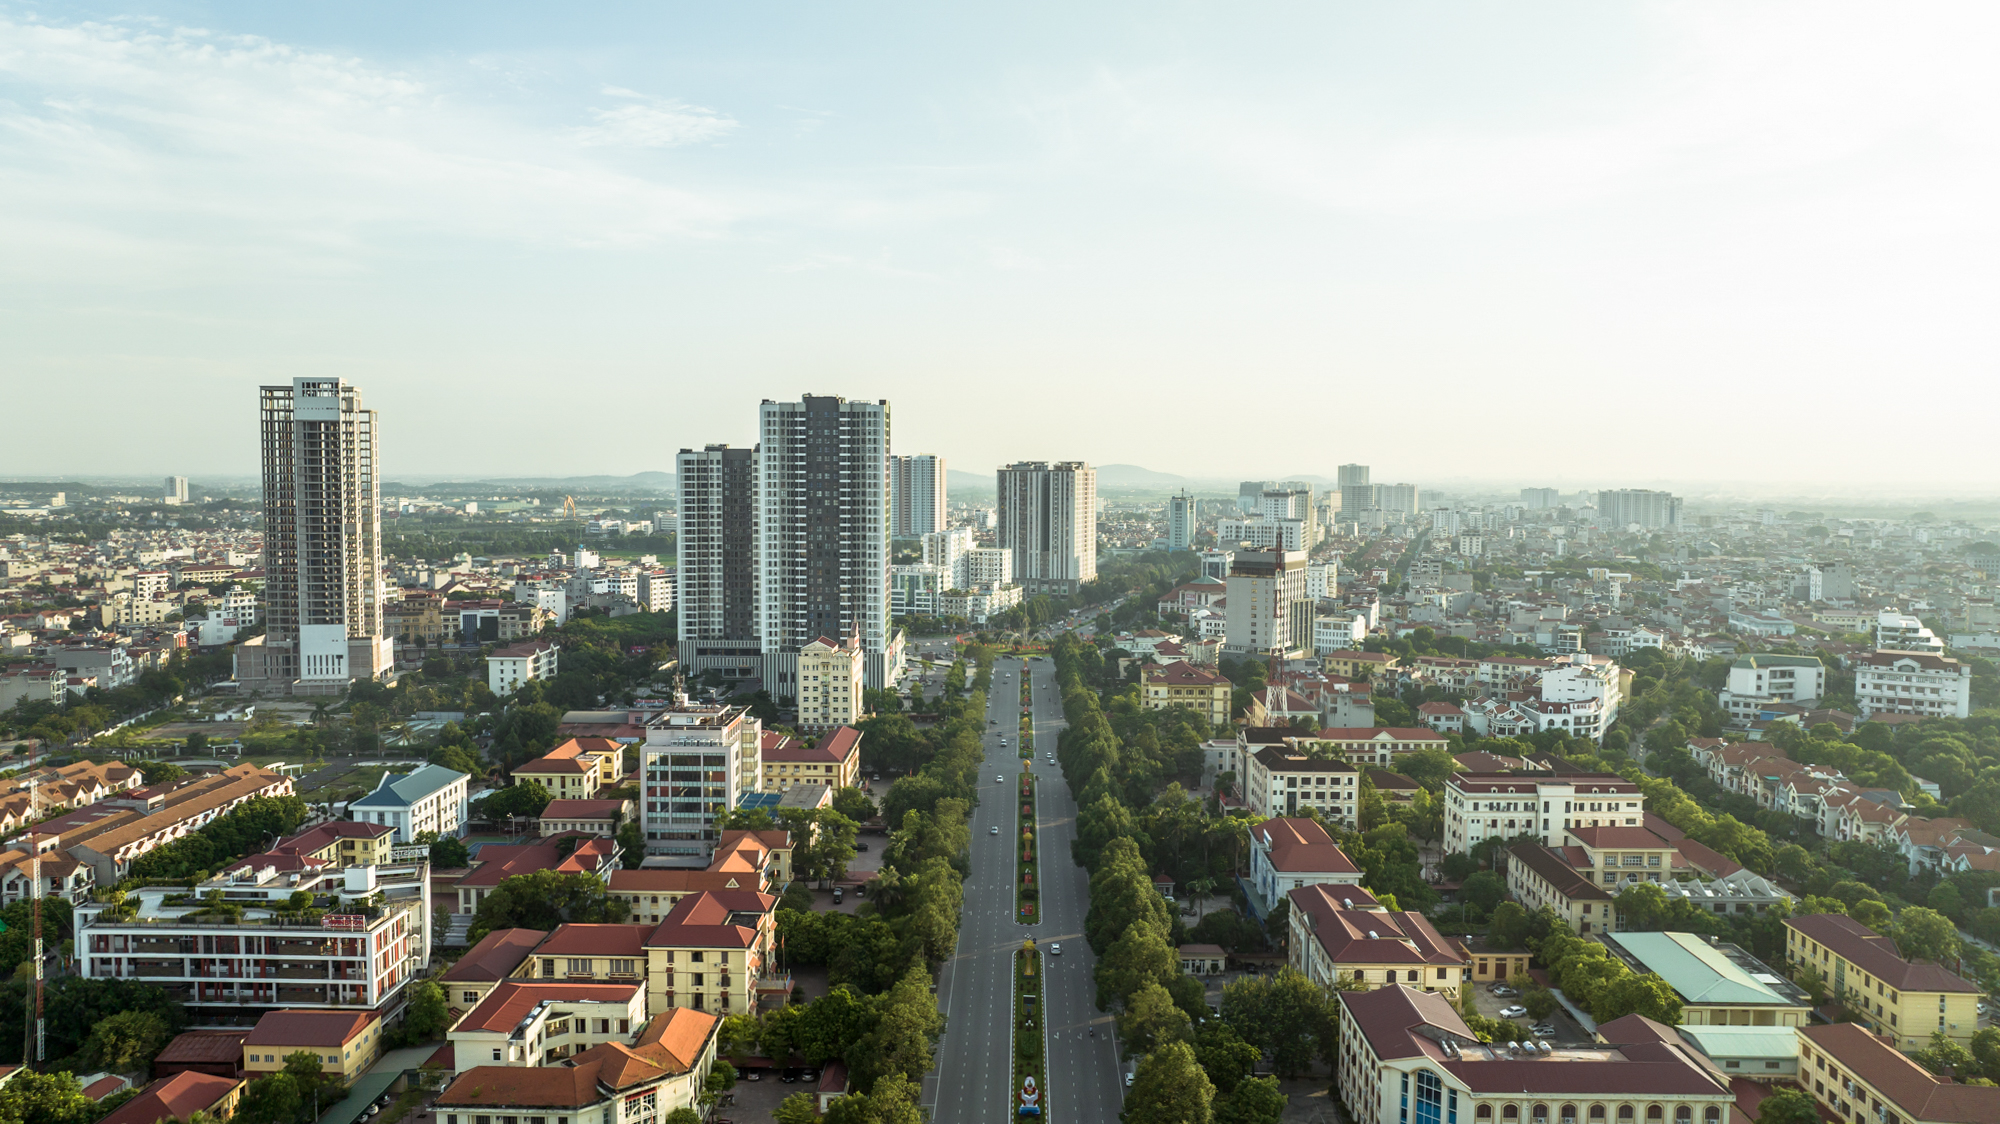 Cận cảnh khu hành chính tỉnh có mô hình kiến trúc độc đáo nhất Việt Nam - Ảnh 3.